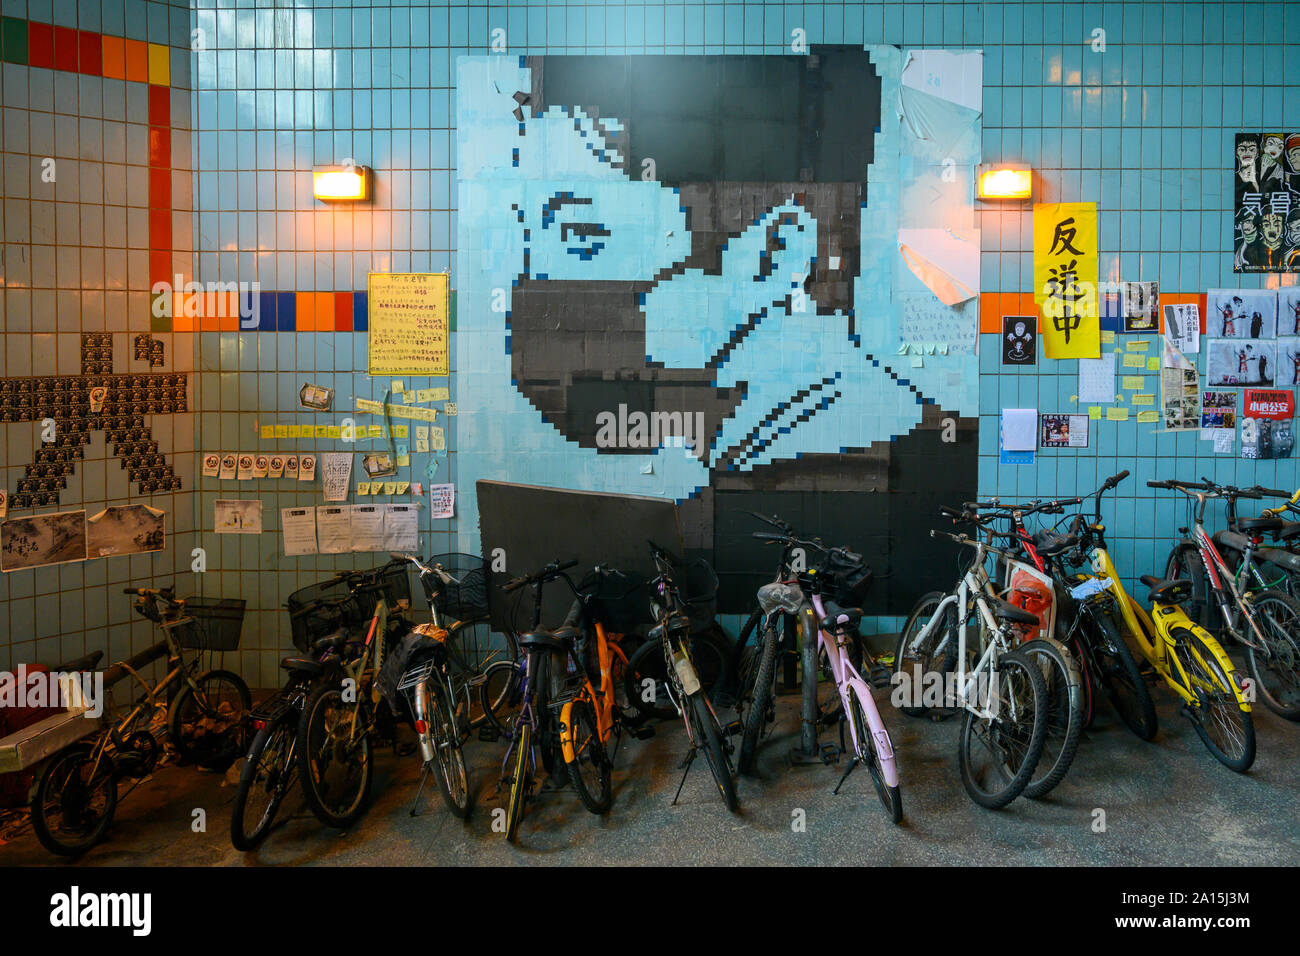 Tai Po, Hong Kong. Le 23 septembre 2019. Une peinture murale d'un manifestant masqué à Tai Po Hong Kong. C'est l'un des nombreux murs Lennon contenant des affiches, messages et graffiti qui sont trouvés autour de Hong Kong. Banque D'Images